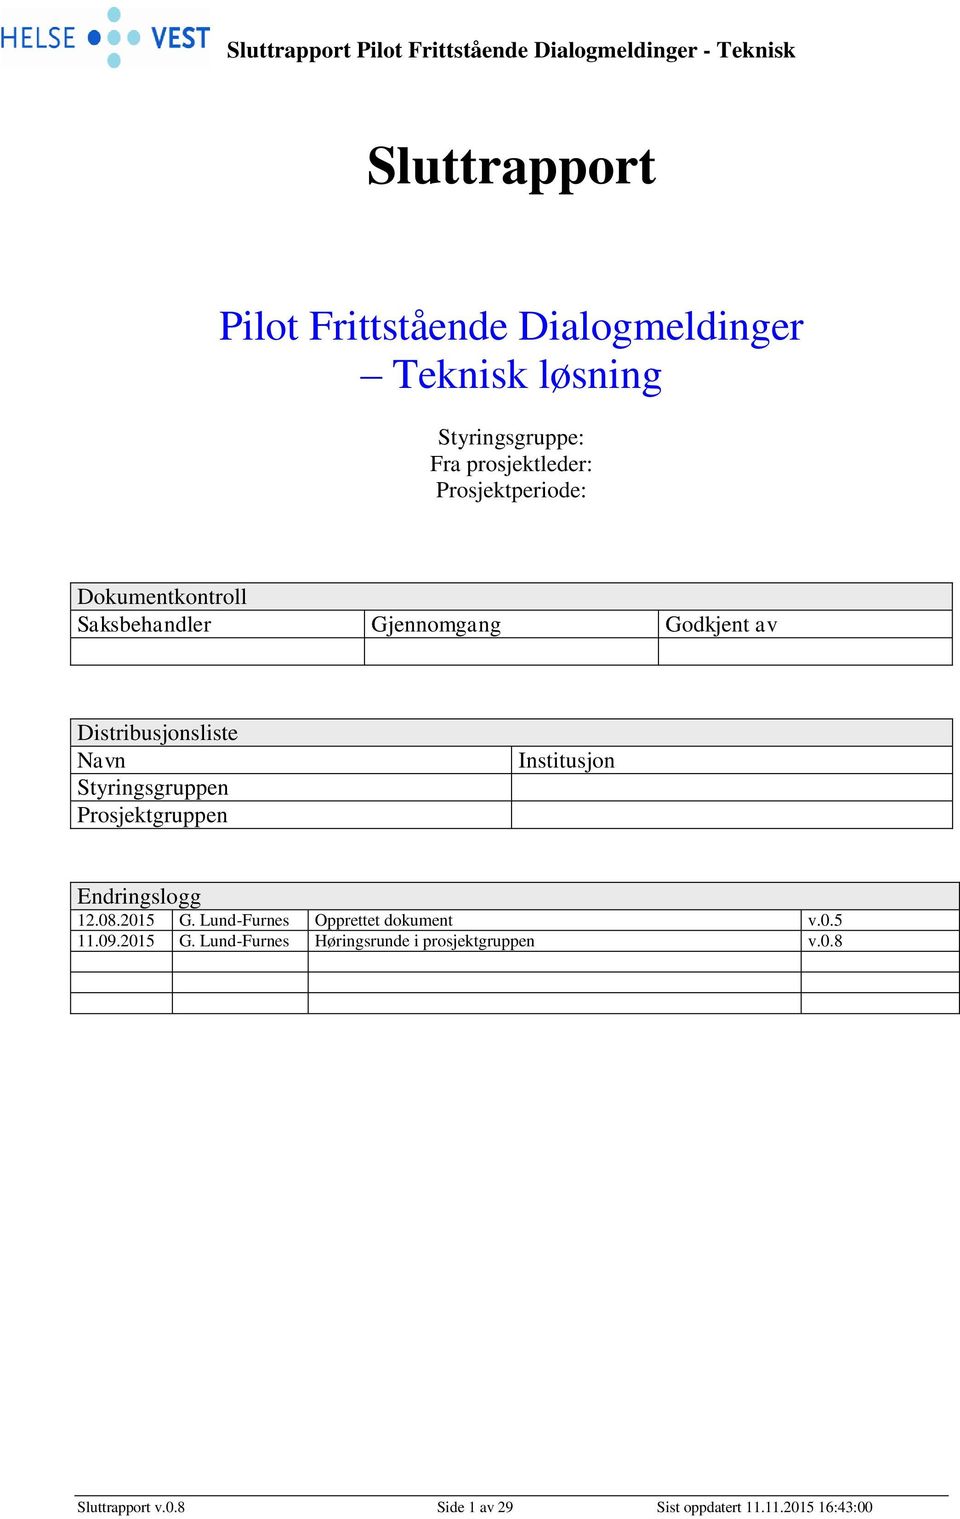 Styringsgruppen Prosjektgruppen Institusjon Endringslogg 12.08.2015 G. Lund-Furnes Opprettet dokument v.0.5 11.